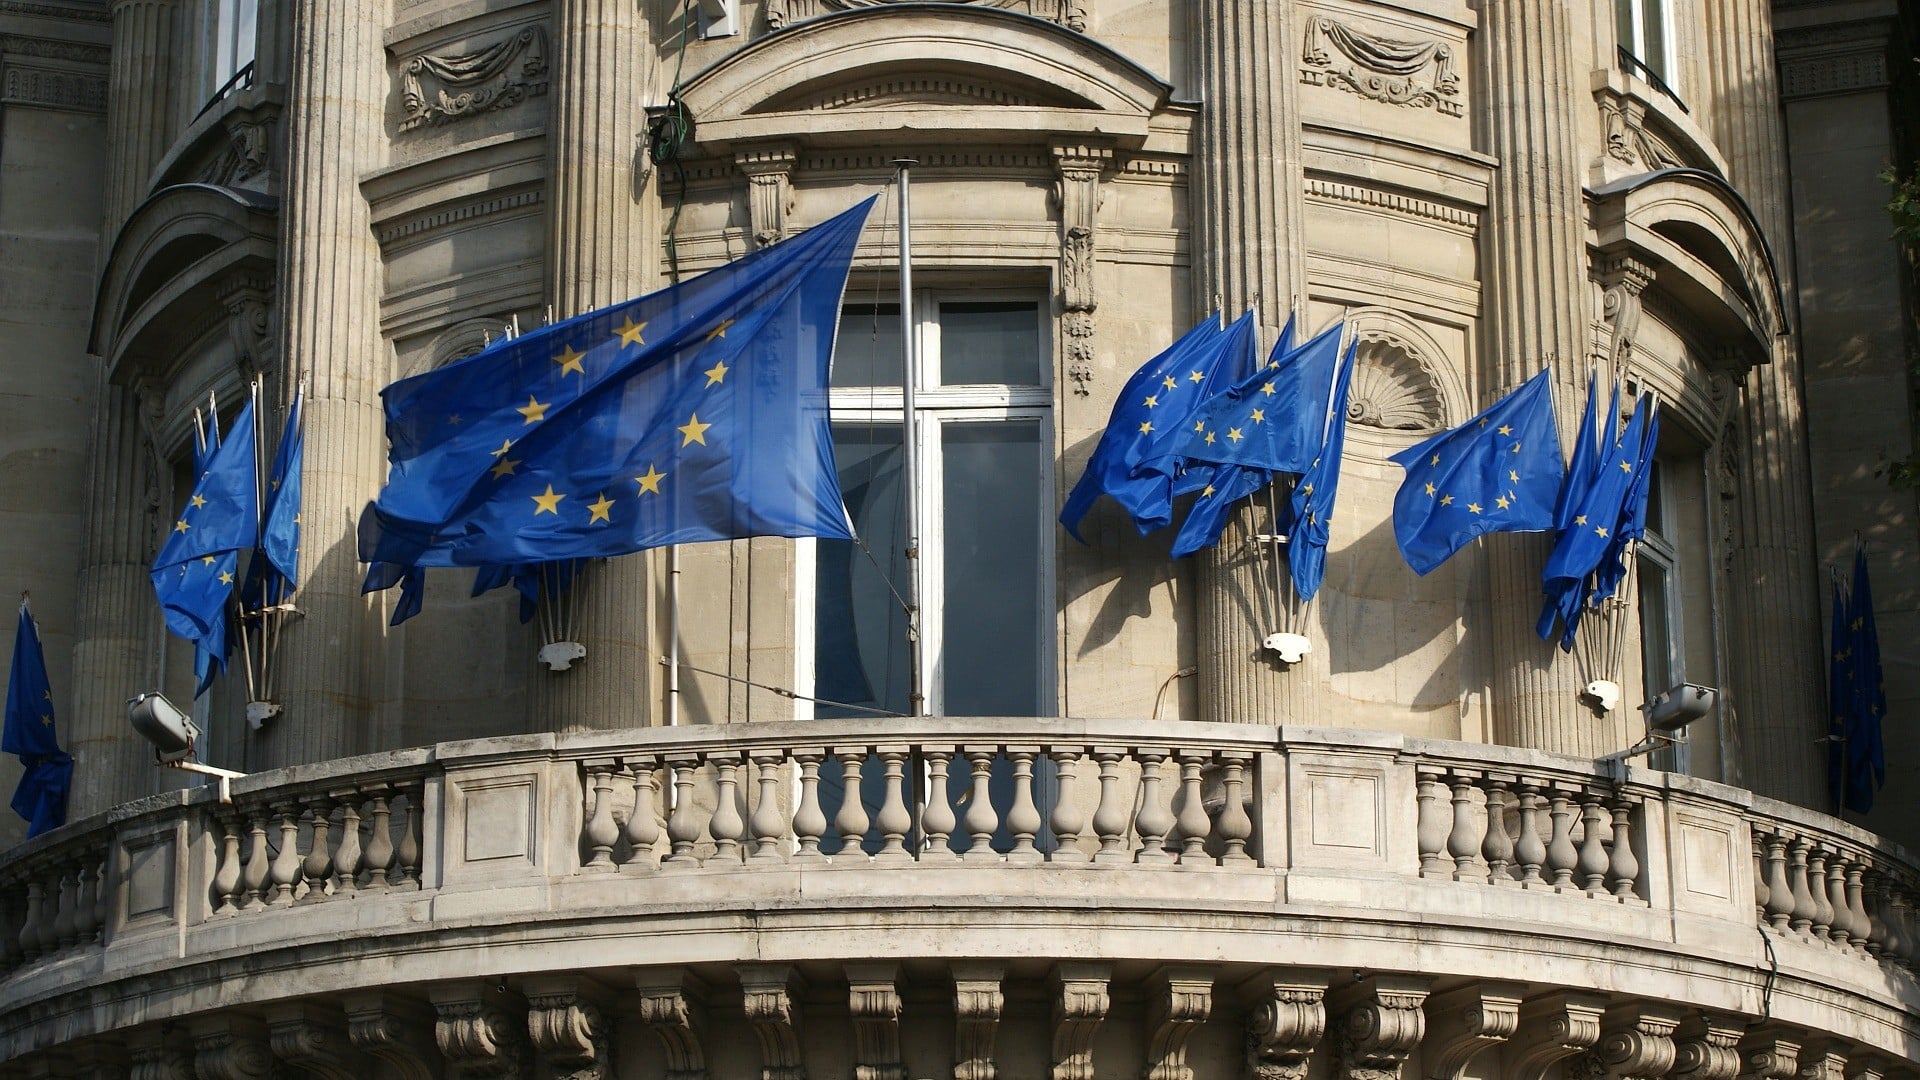 le fronton d'un bâtiment avec plusieurs drapeaux européens.